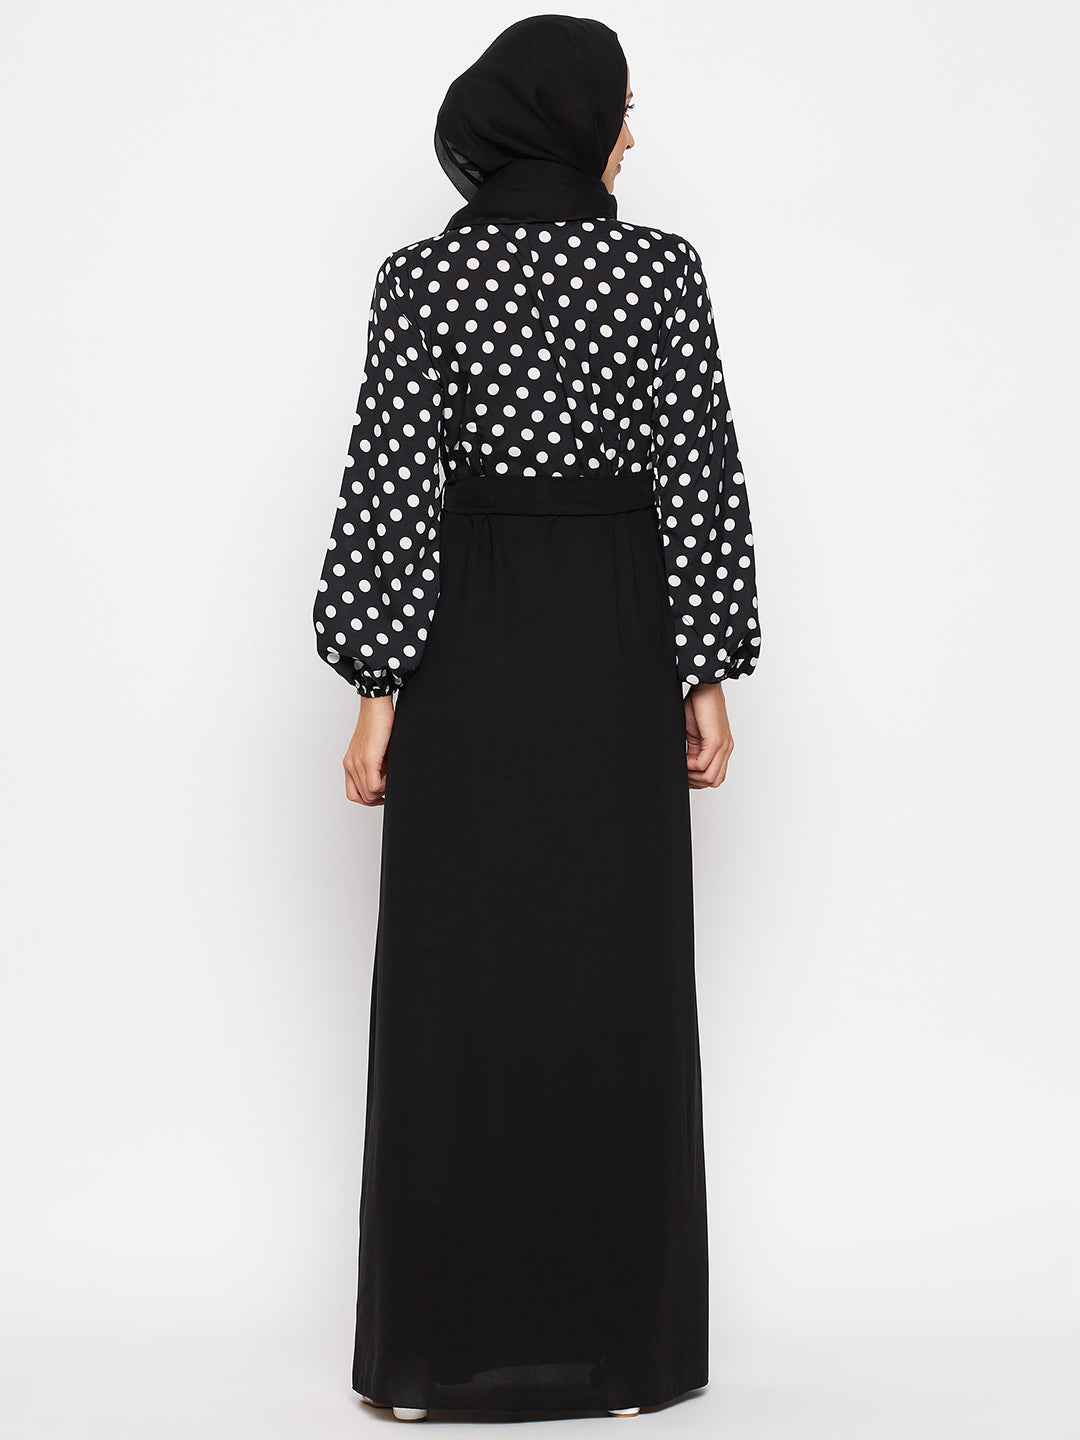 Nabia Women Black & White Polka Dot Printed Abaya With Georgette Scarf